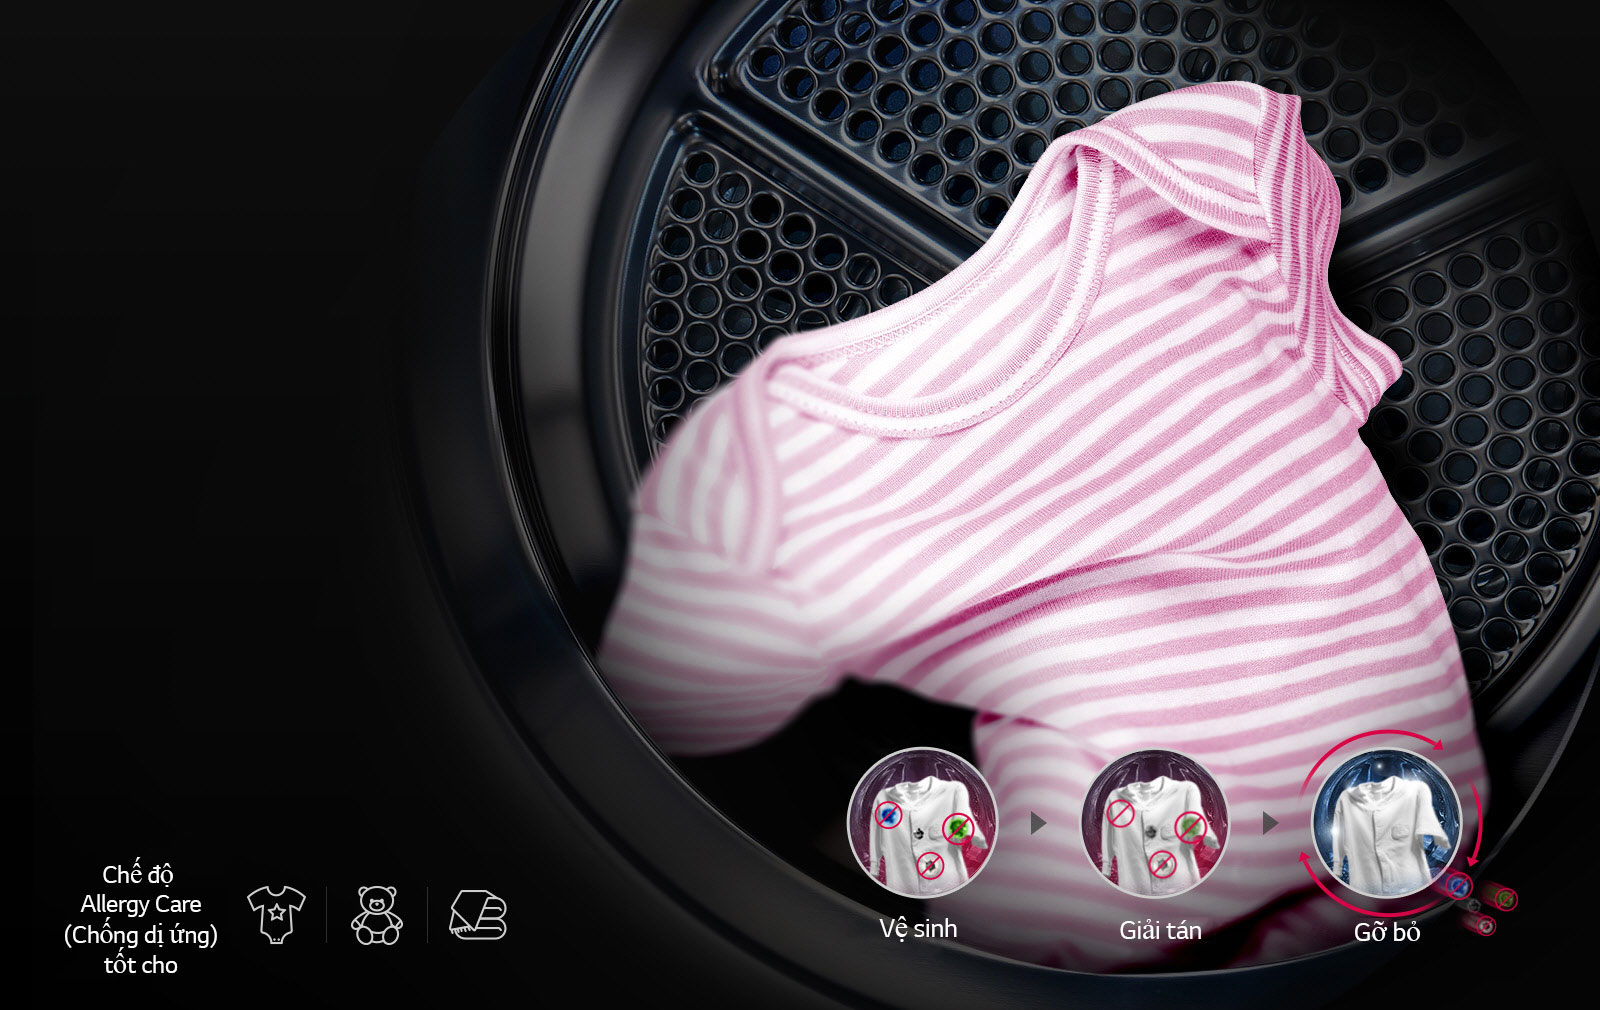 LG WashTower™ mang đến giải pháp chăm sóc quần áo vượt tầm mong đợi - Ảnh 5.